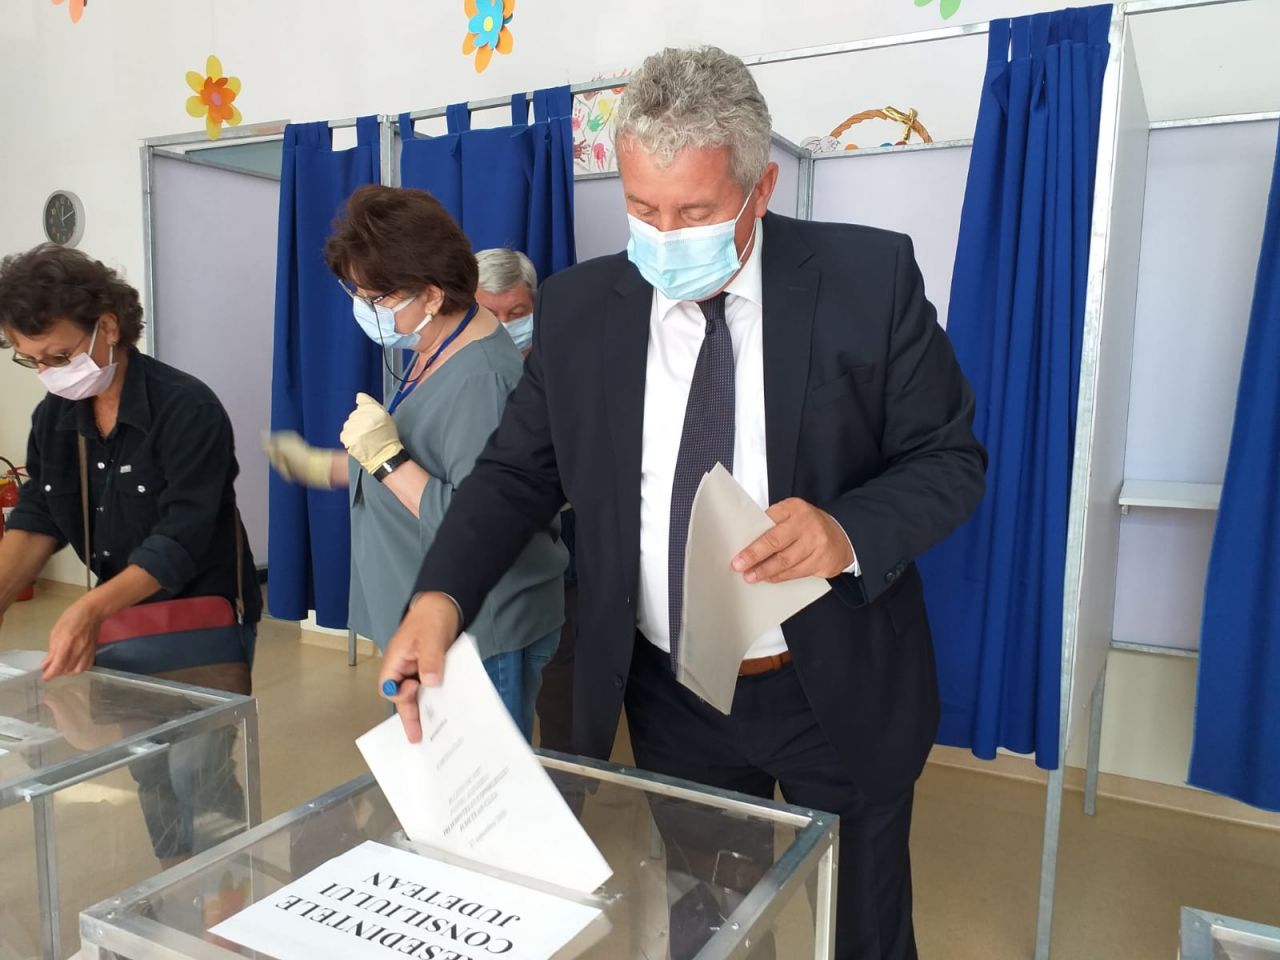 Daniel Buda, la Cluj: Am votat pentru acele echipe care reprezintă garanția unei vieți mai bune